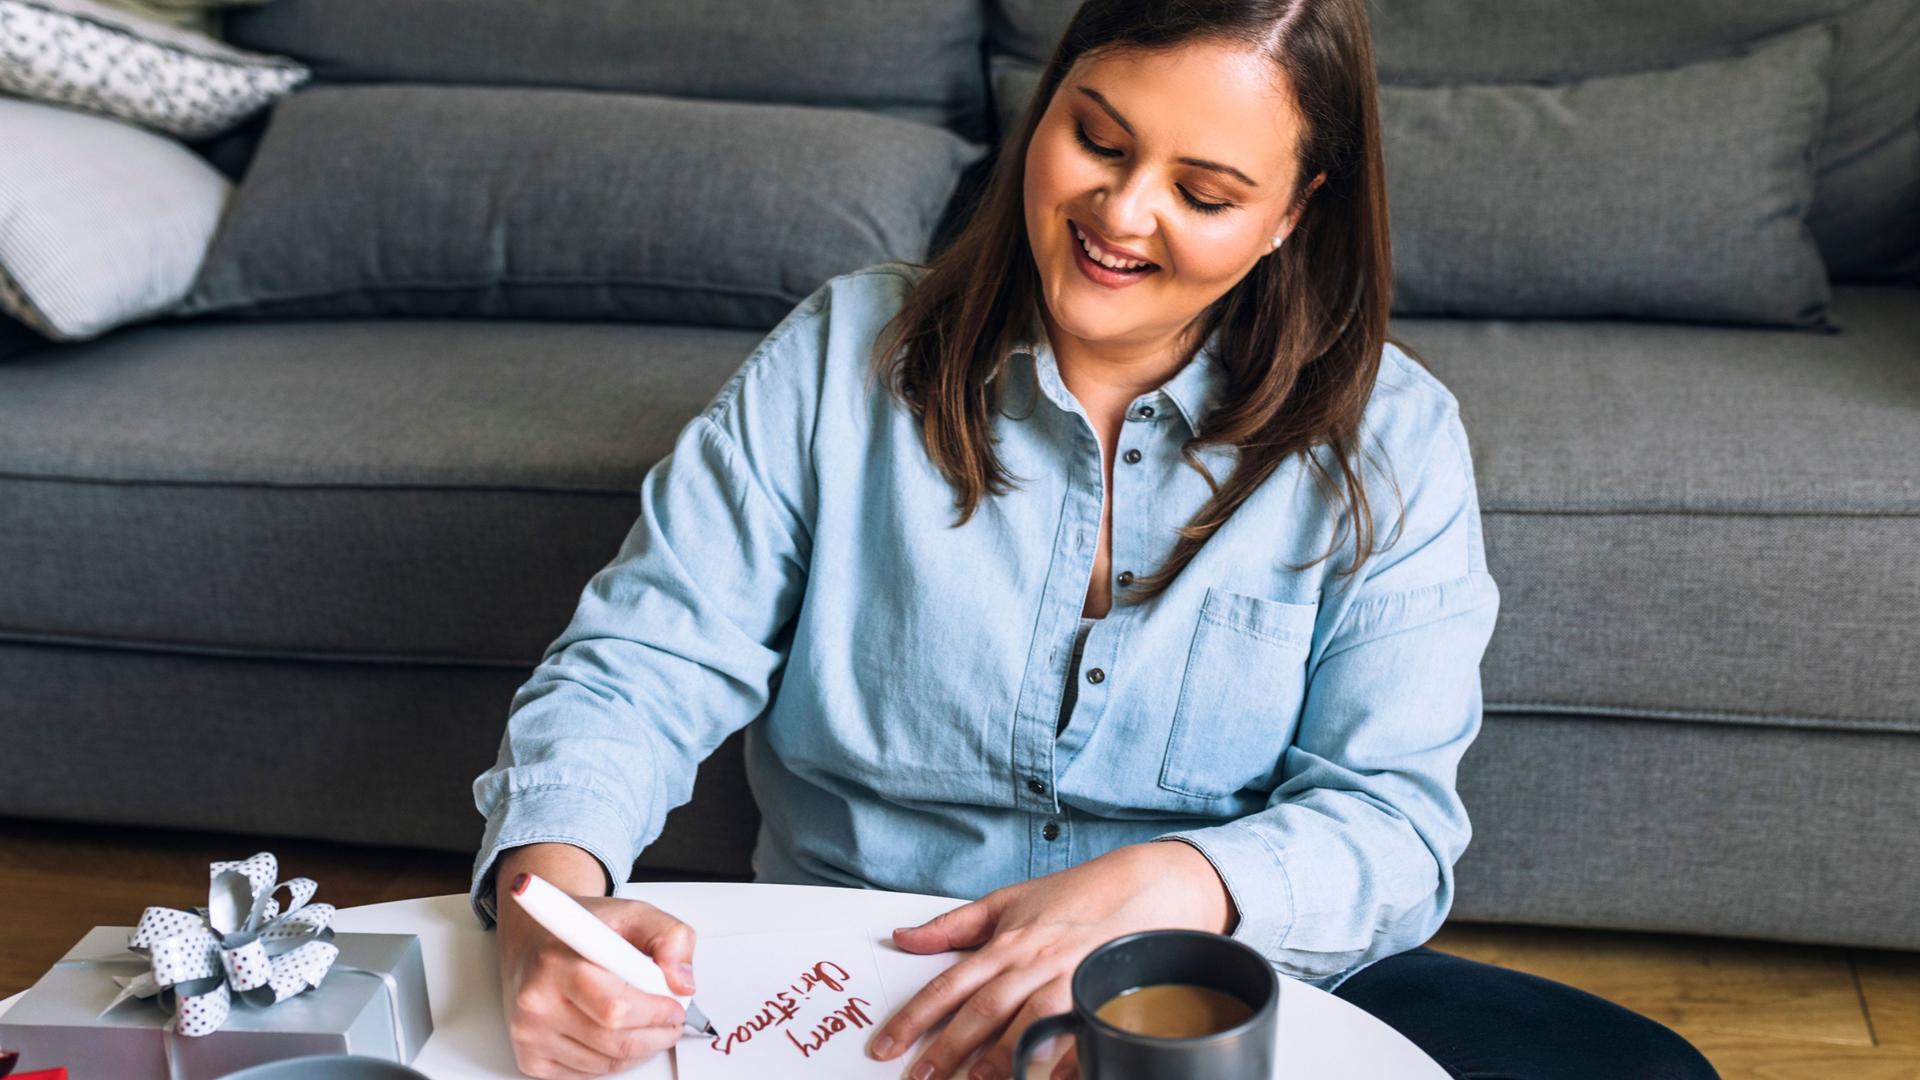 Eine lächelnde Frau, die im Wohnzimmer auf dem Boden sitzt und eine Weihnachtskarte auf dem Couchtisch schreibt. Auf dem Tische stehen Kekse und ein Kaffee.